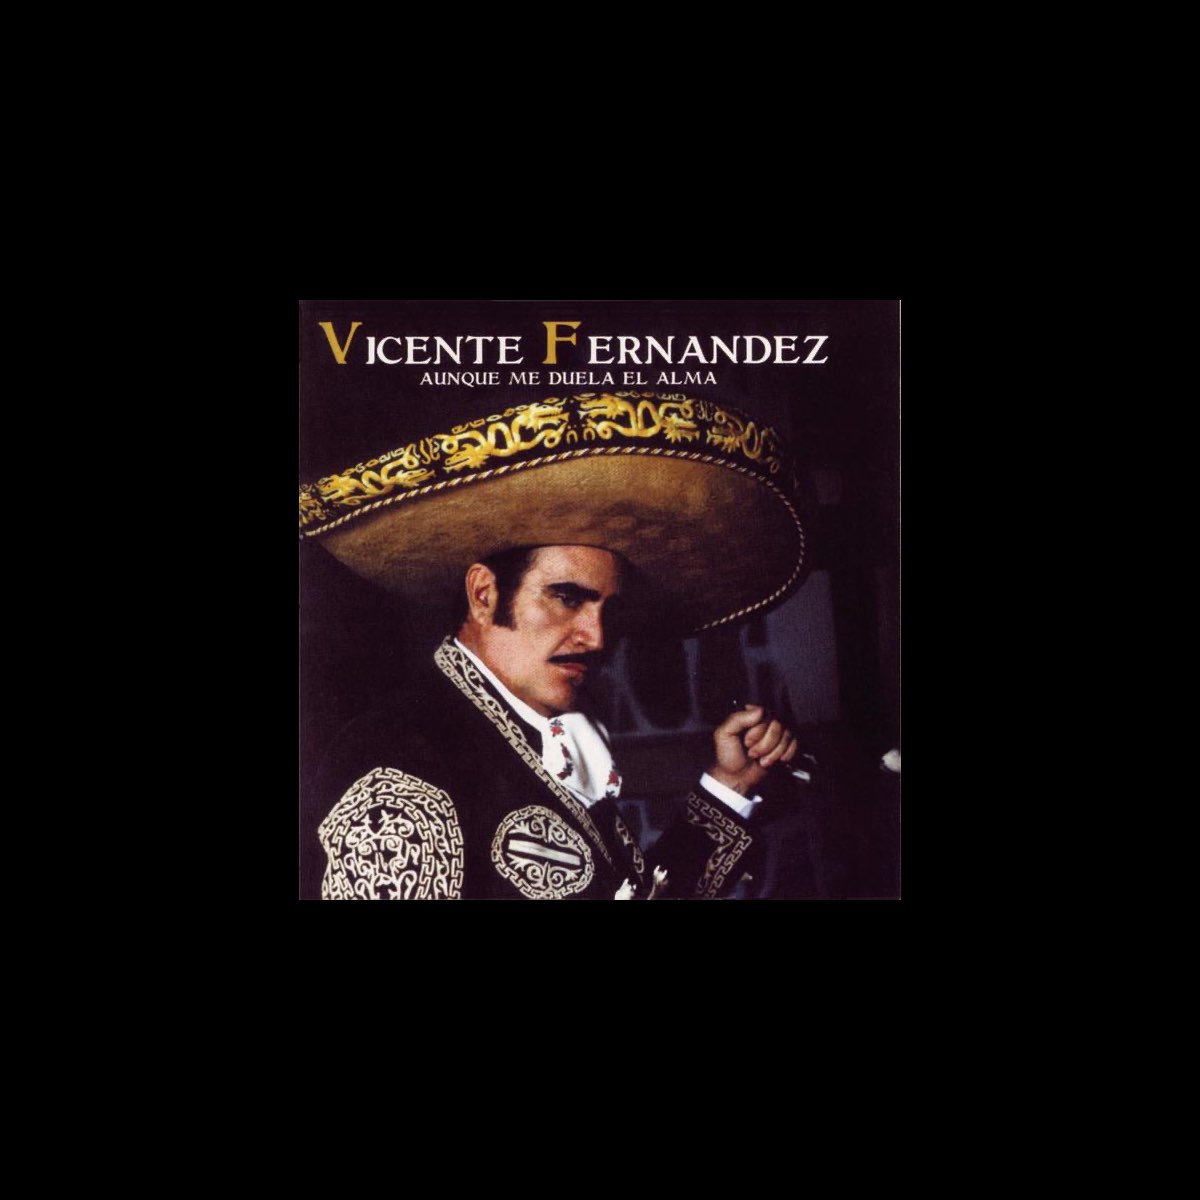 ‎Aunque Me Duela el Alma - Album by Vicente Fernández - Apple Music